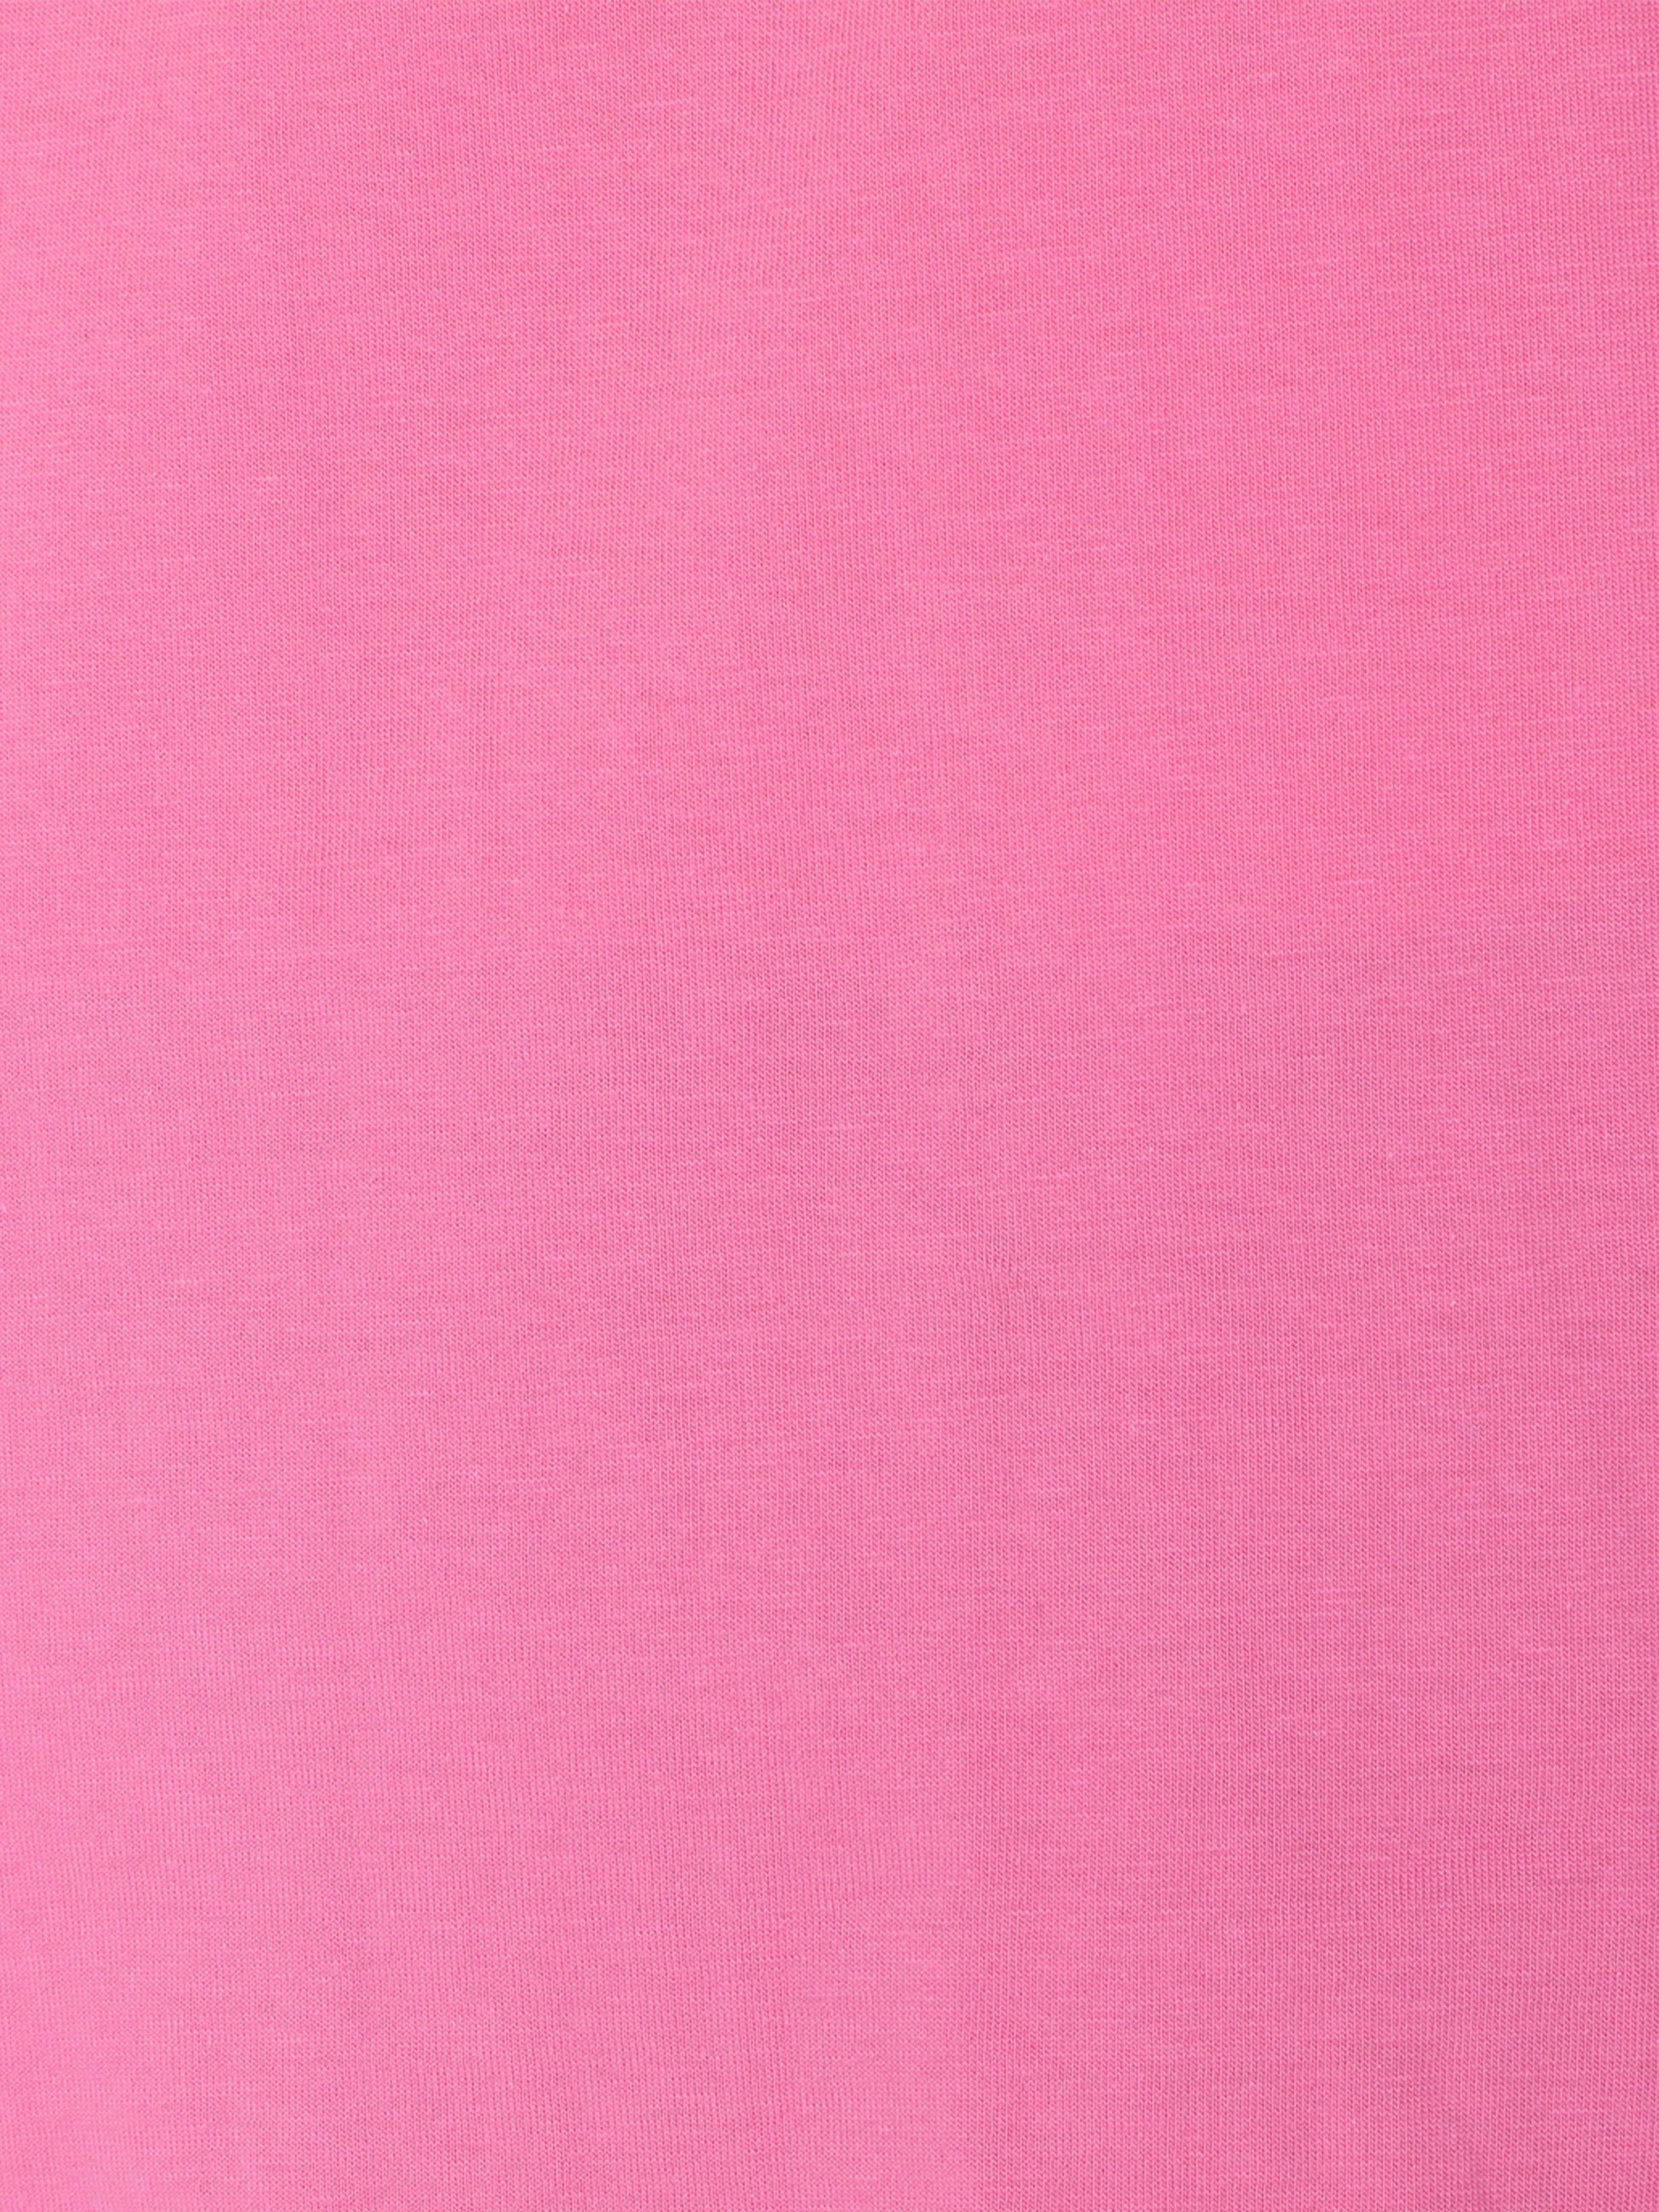 #color_light-pink